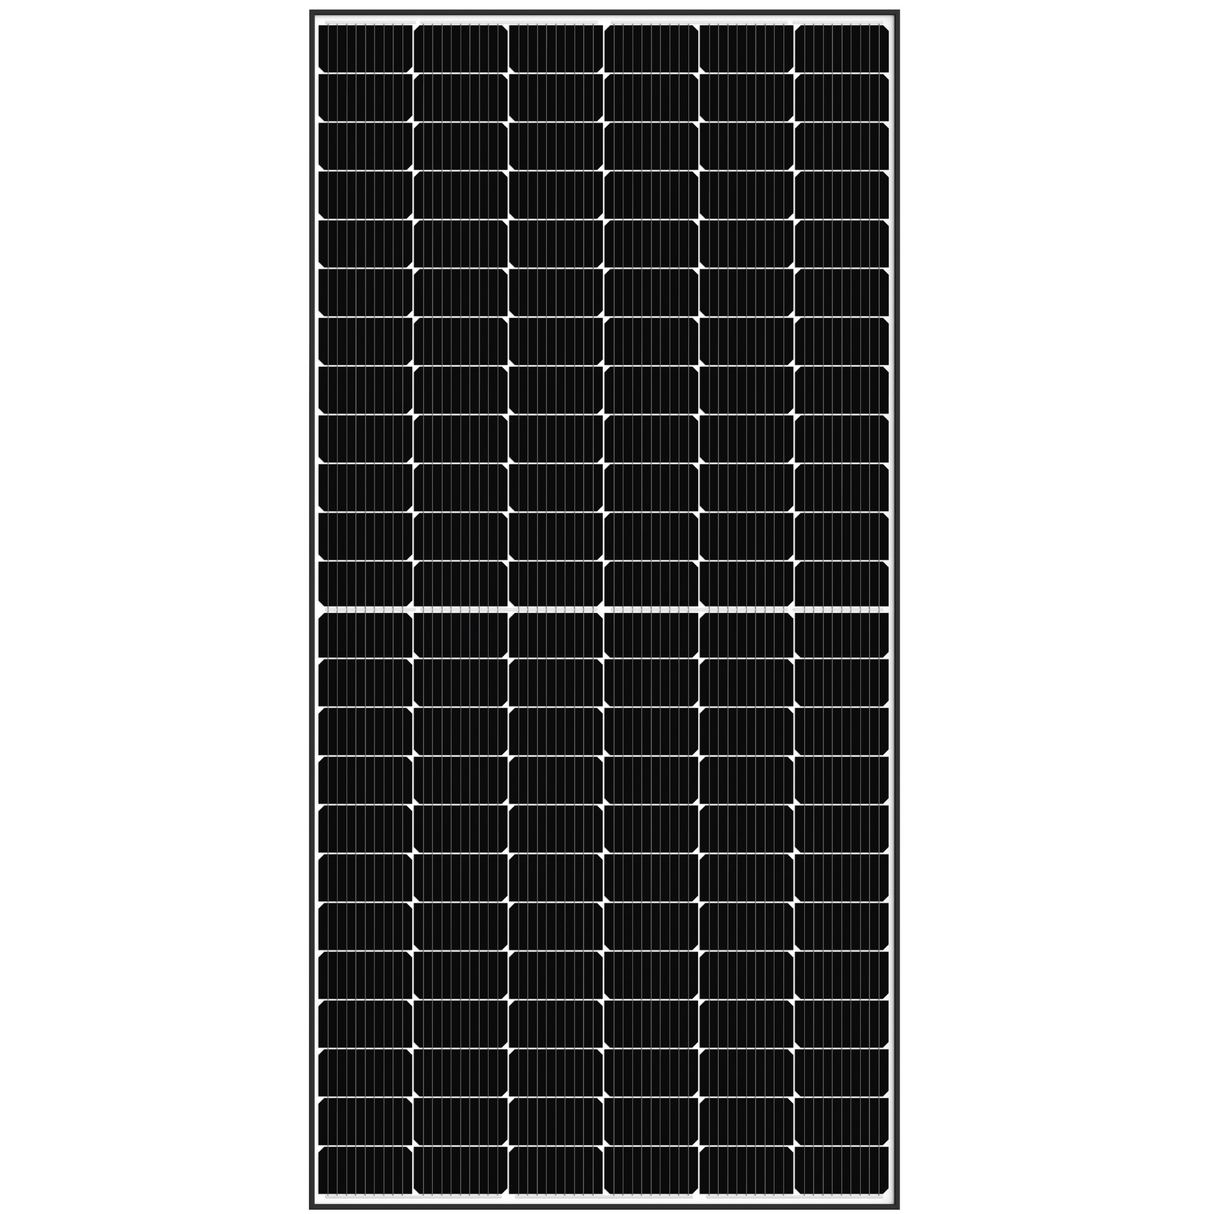 Panou Fotovoltaic Vendato 550W - 144 celule - VDS-S144/M10H-550 - (2279*1134*35mm) - Mono Half-Cut